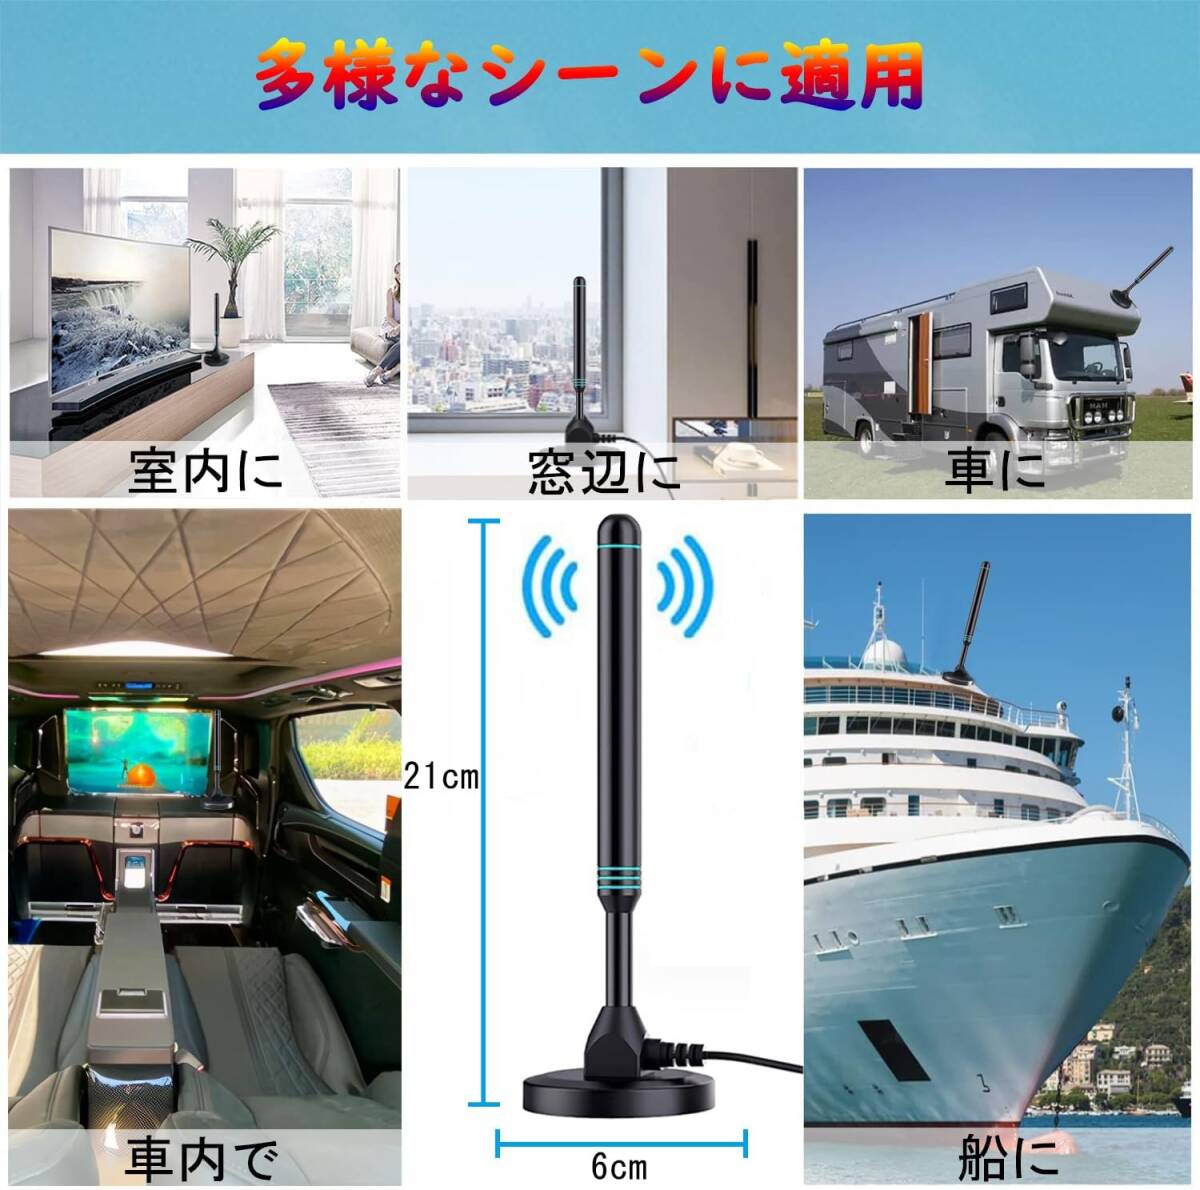  телевизор антенна салон антенна [ no. 3 поколение сигнал больше ширина контейнер усиленный модель ] маленький размер легкий прием область примерно 600KM 4K HDTV антенна UHF VHF соответствует ( черный )